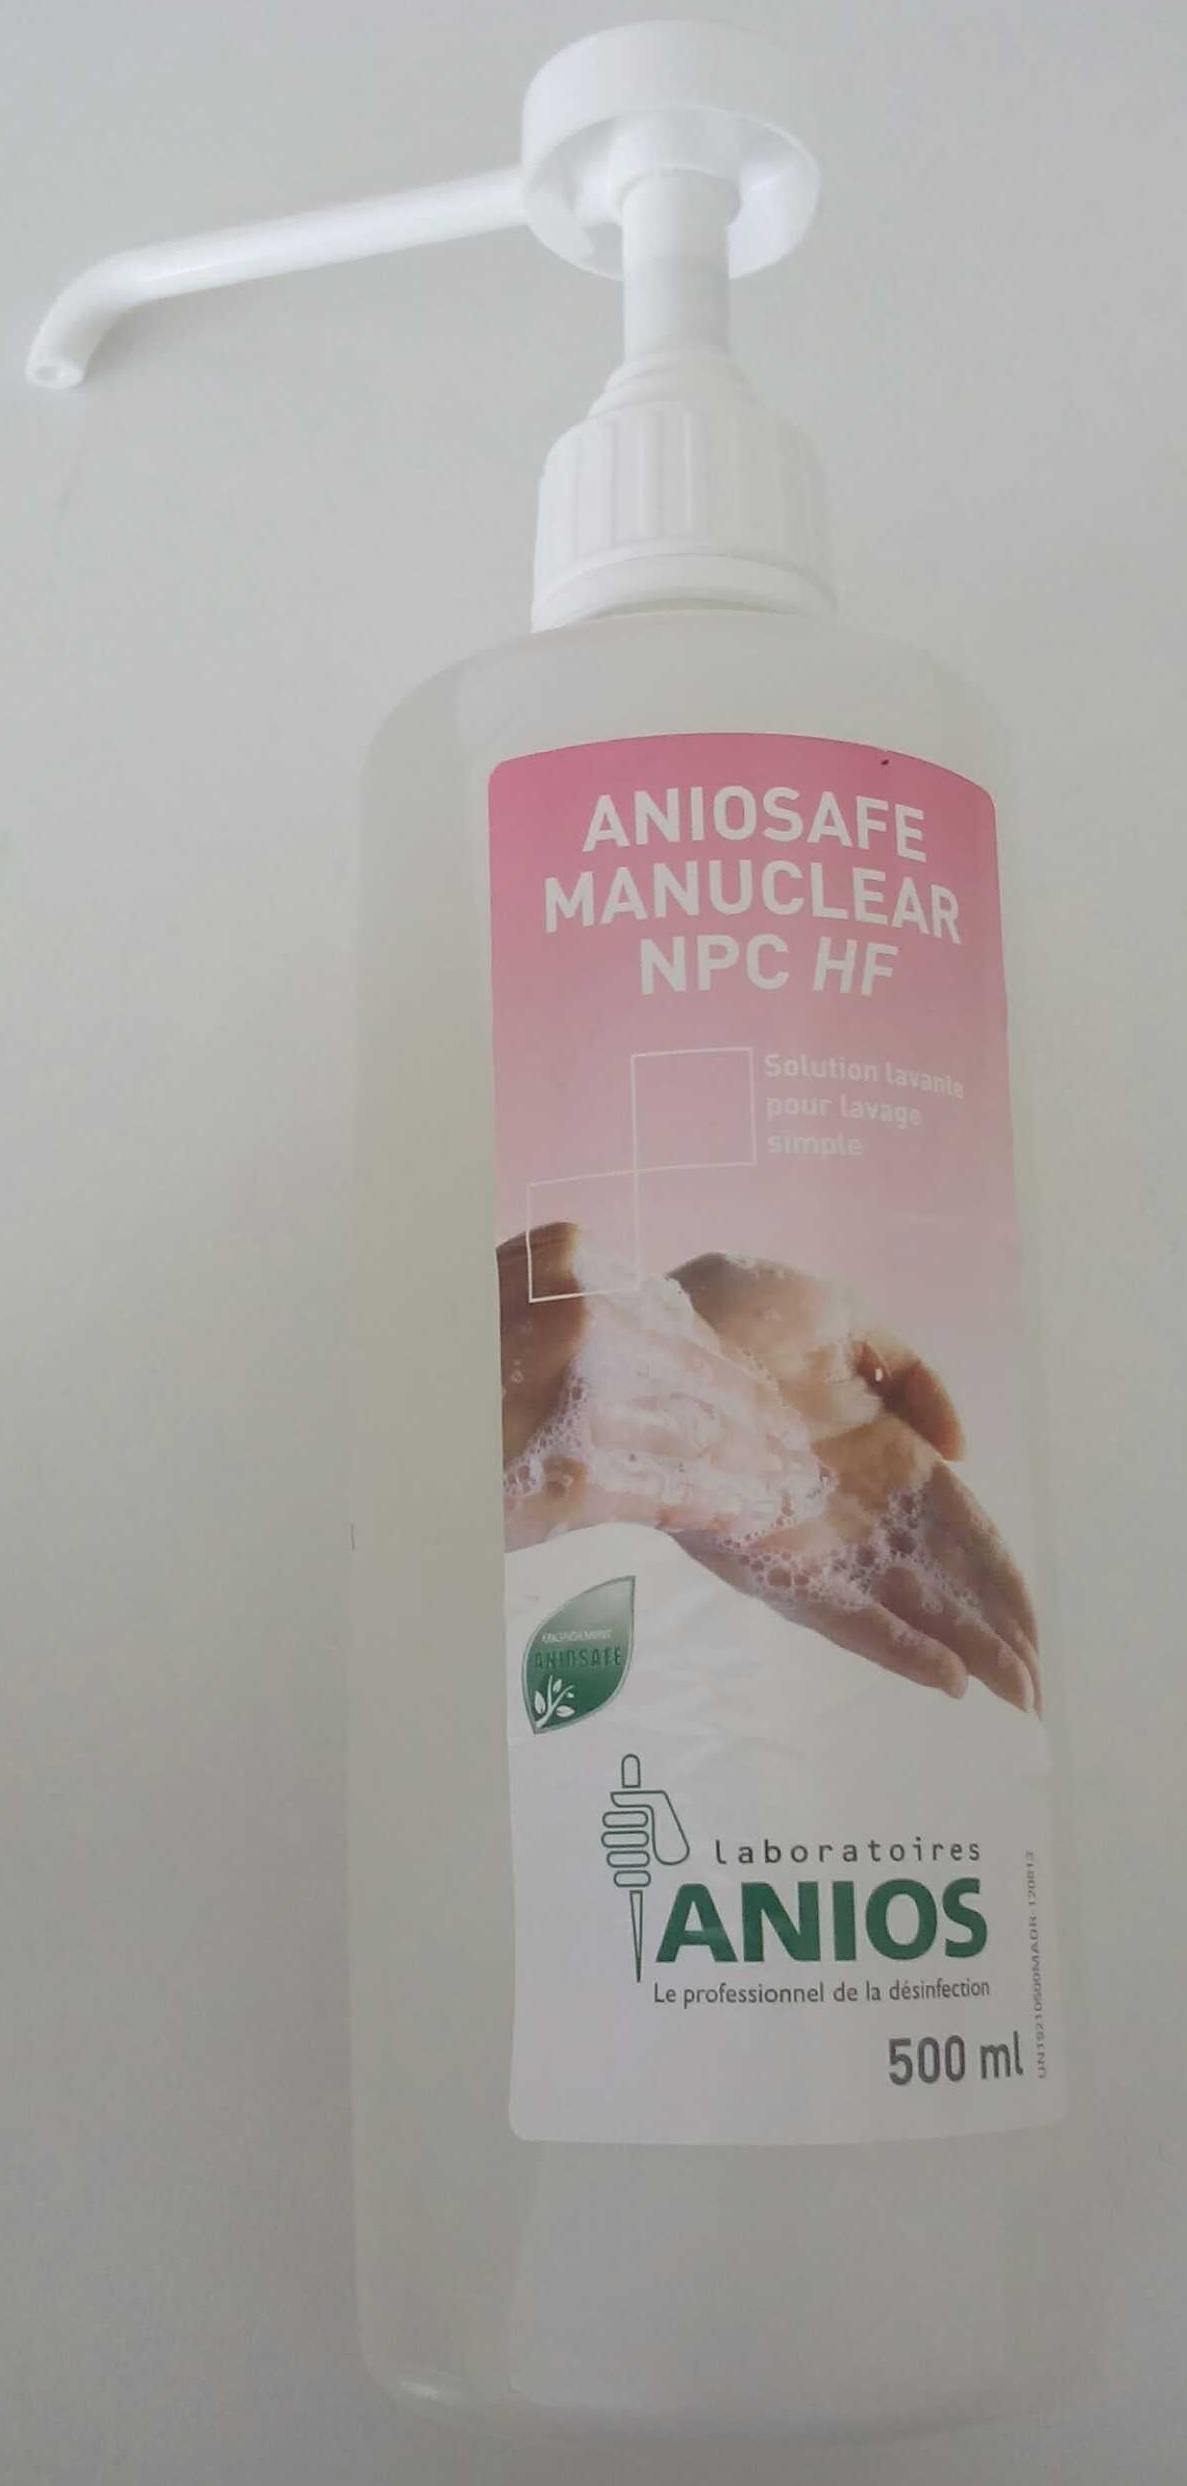 Aniosafe Manuclear NPC HF - Produkto - fr